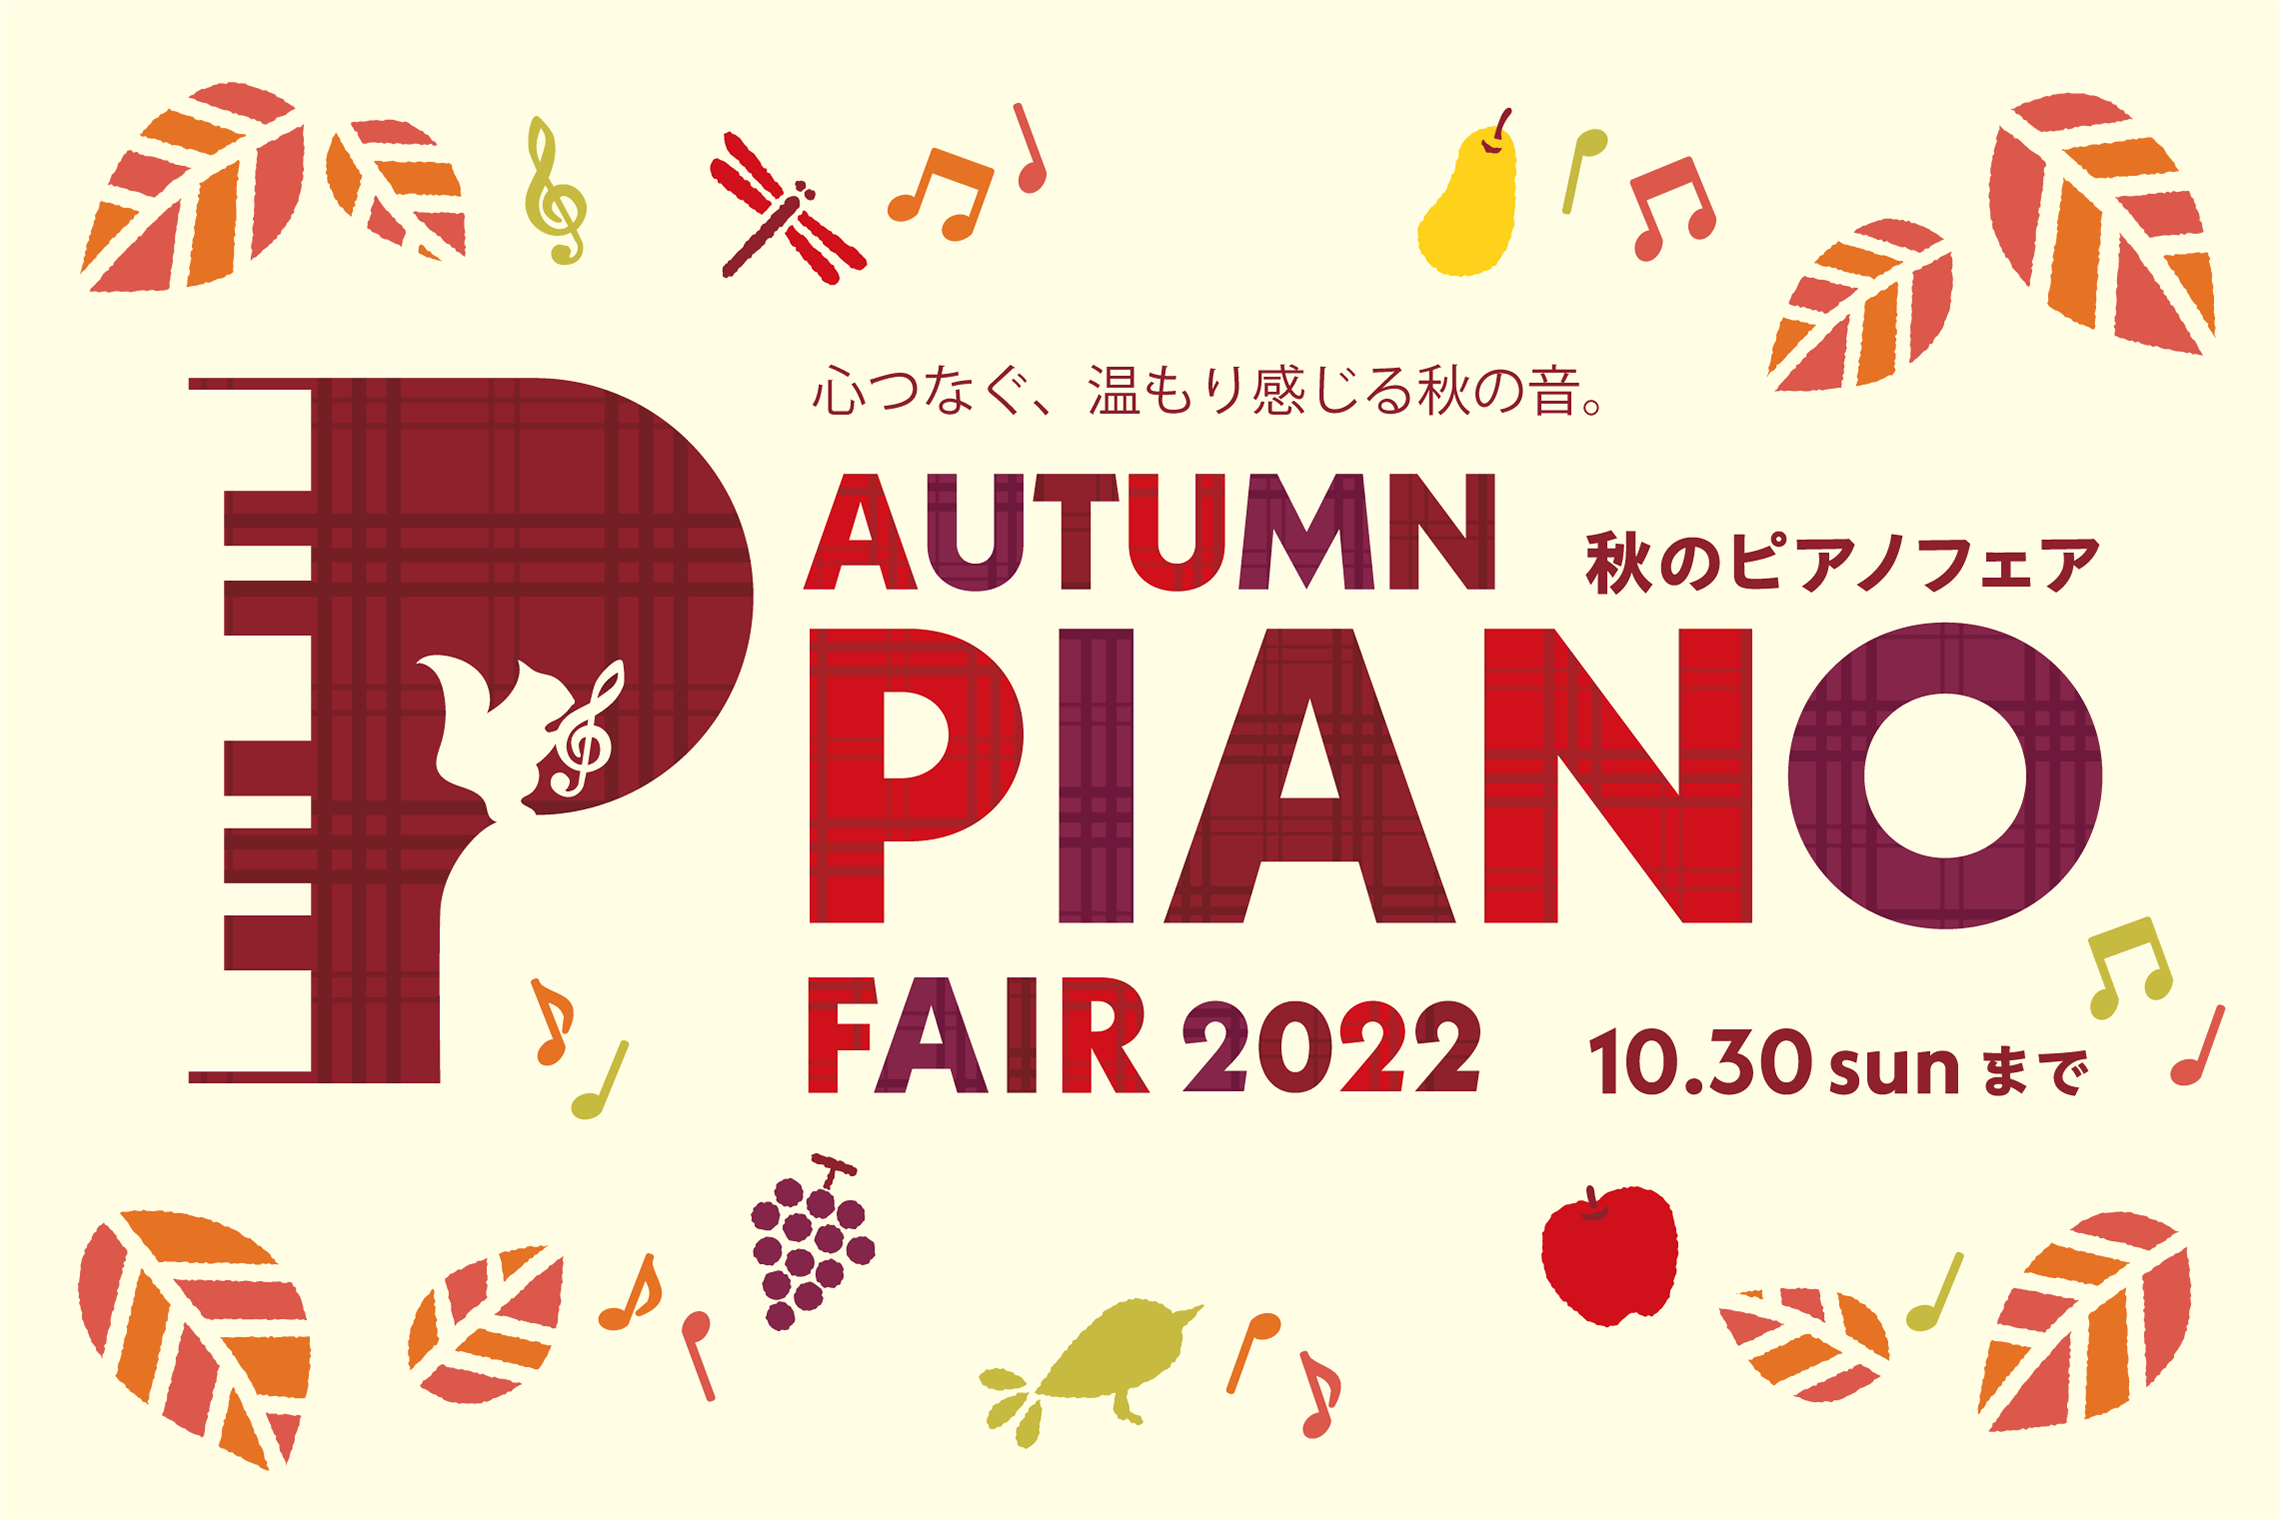 みなさん、こんにちは！川口前川店ピアノアドバイザーの中山です♪だいぶ涼しくなってきましたね、秋を感じています。本日は、秋のピアノフェスタのご案内をさせていただきます。 この期間だけの嬉しいプレゼントが電子ピアノについてきます！この機会にレッスンや趣味用に電子ピアノをご購入してはいかがでしょうか？？お […]